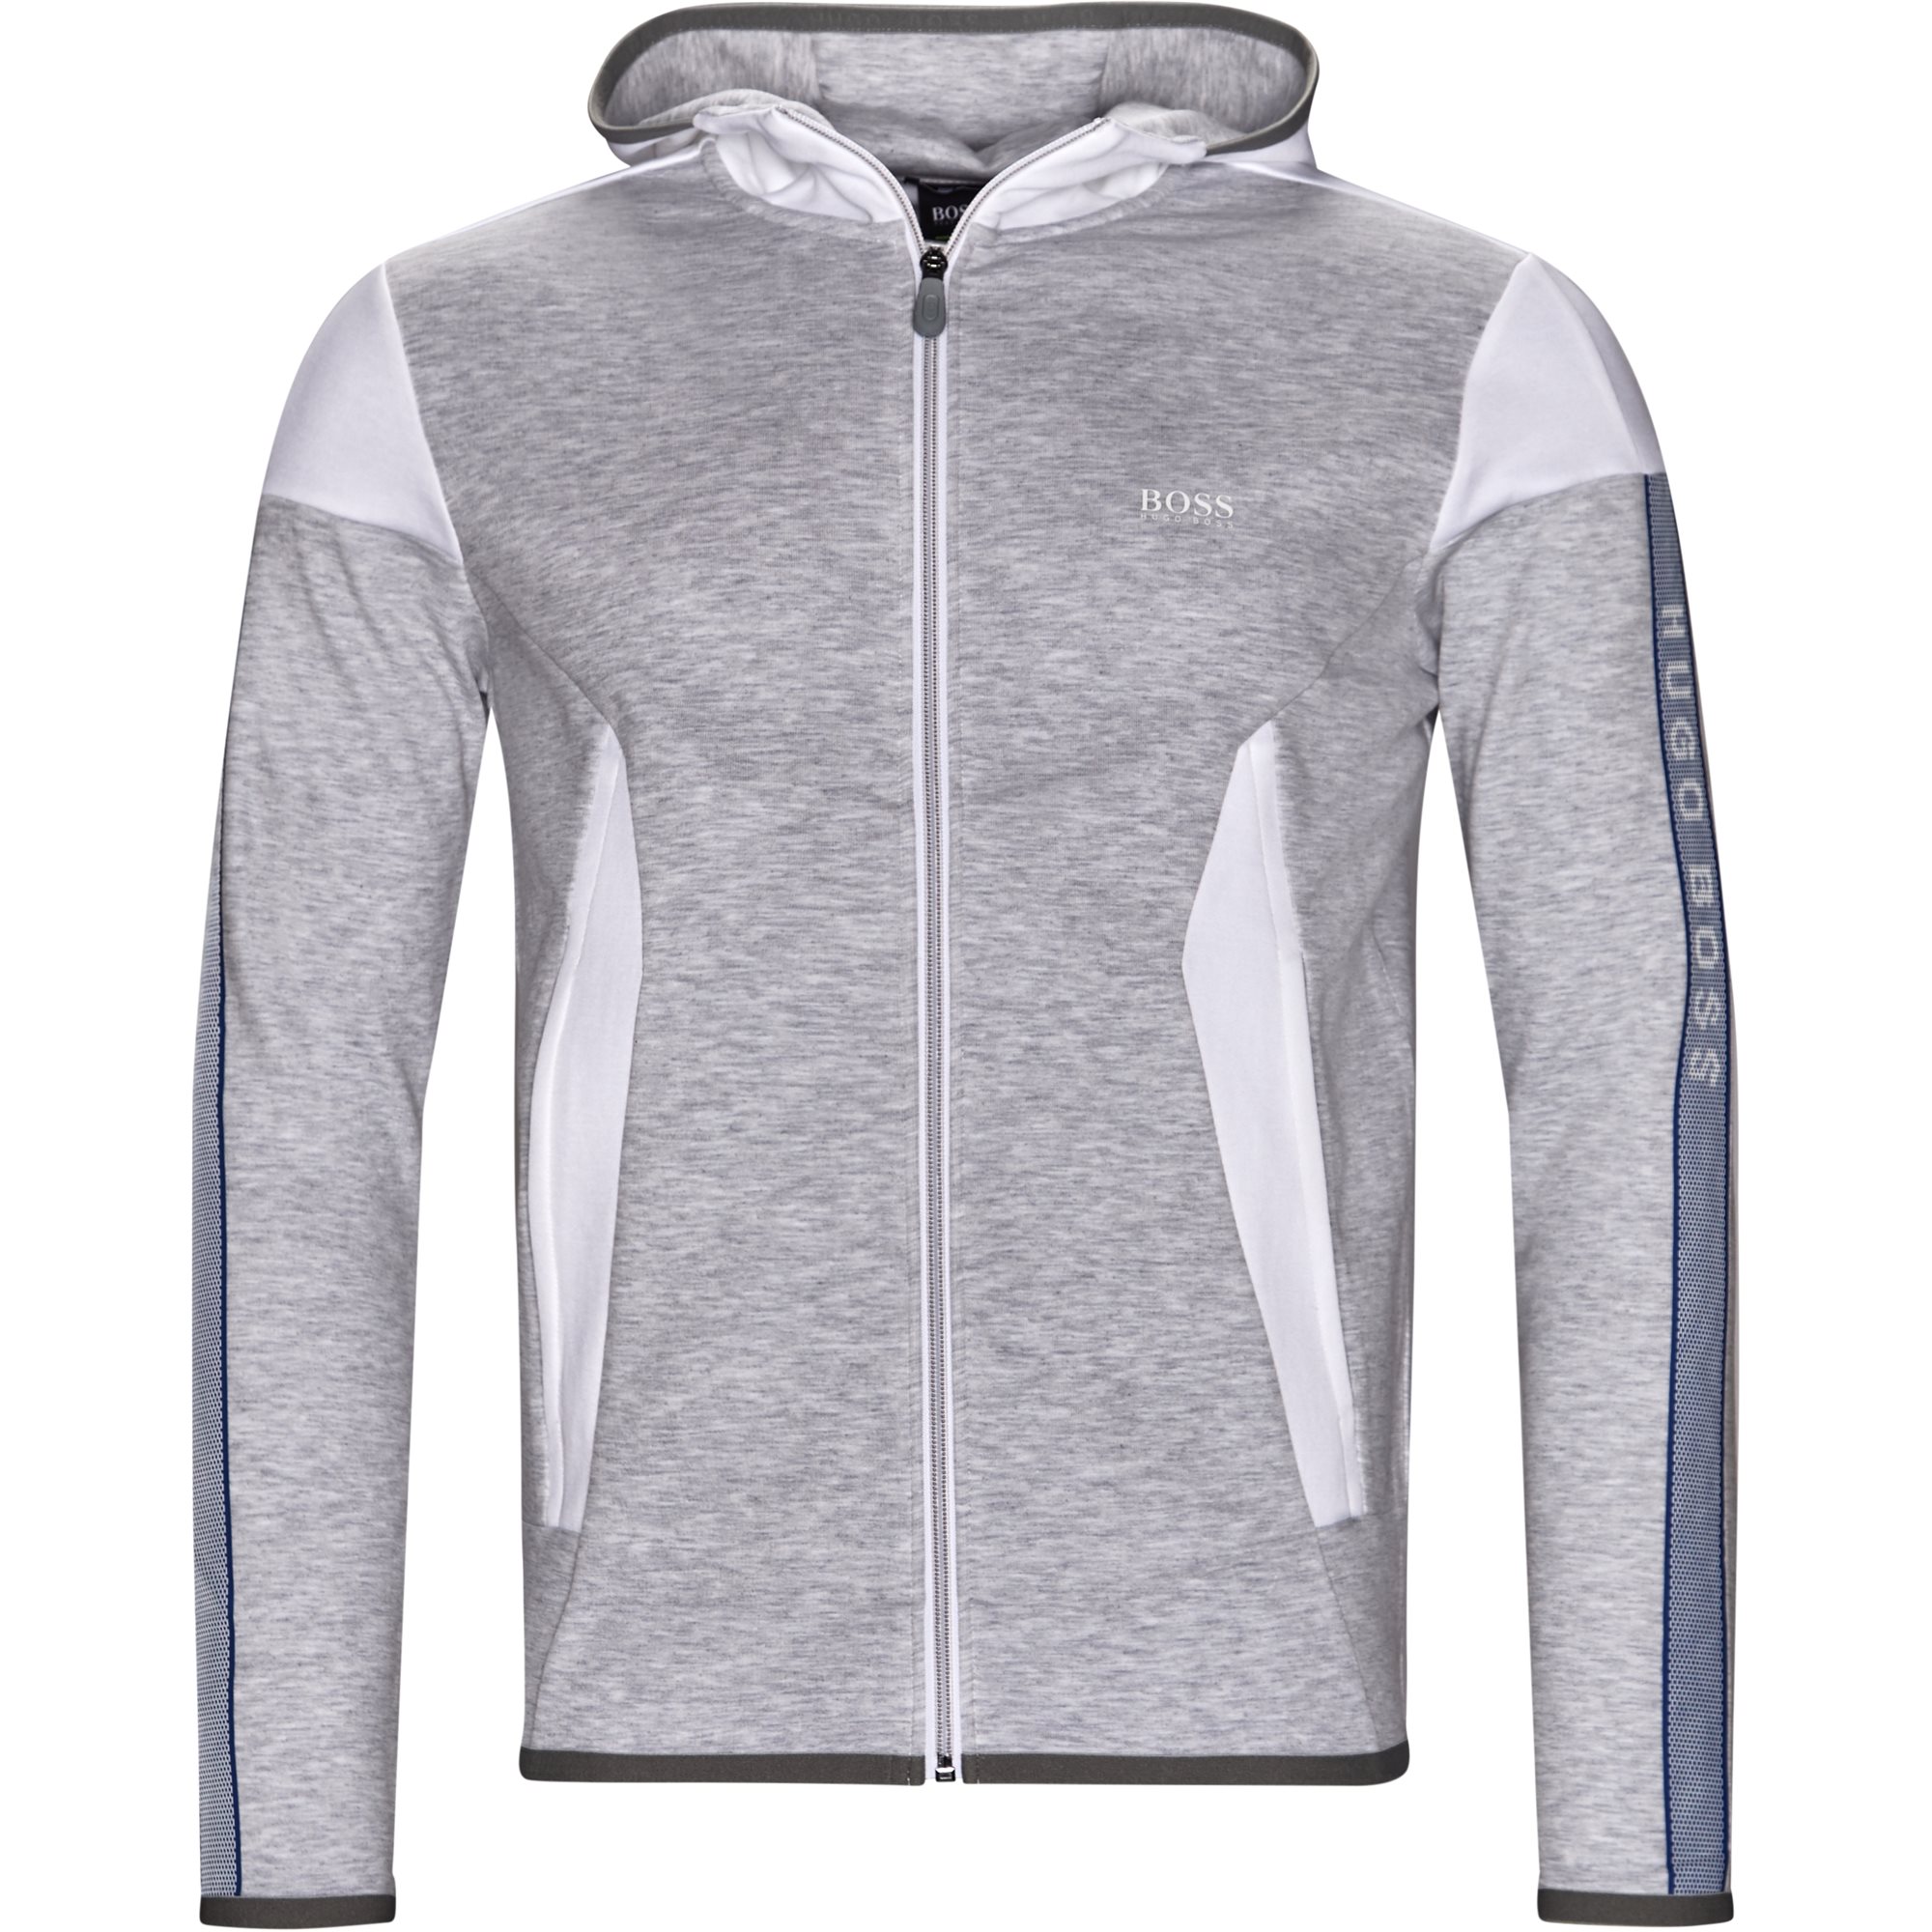 New Hugo Boss Loungewear Sweats Men/'s Hooded Gray Track Jacket 50372060